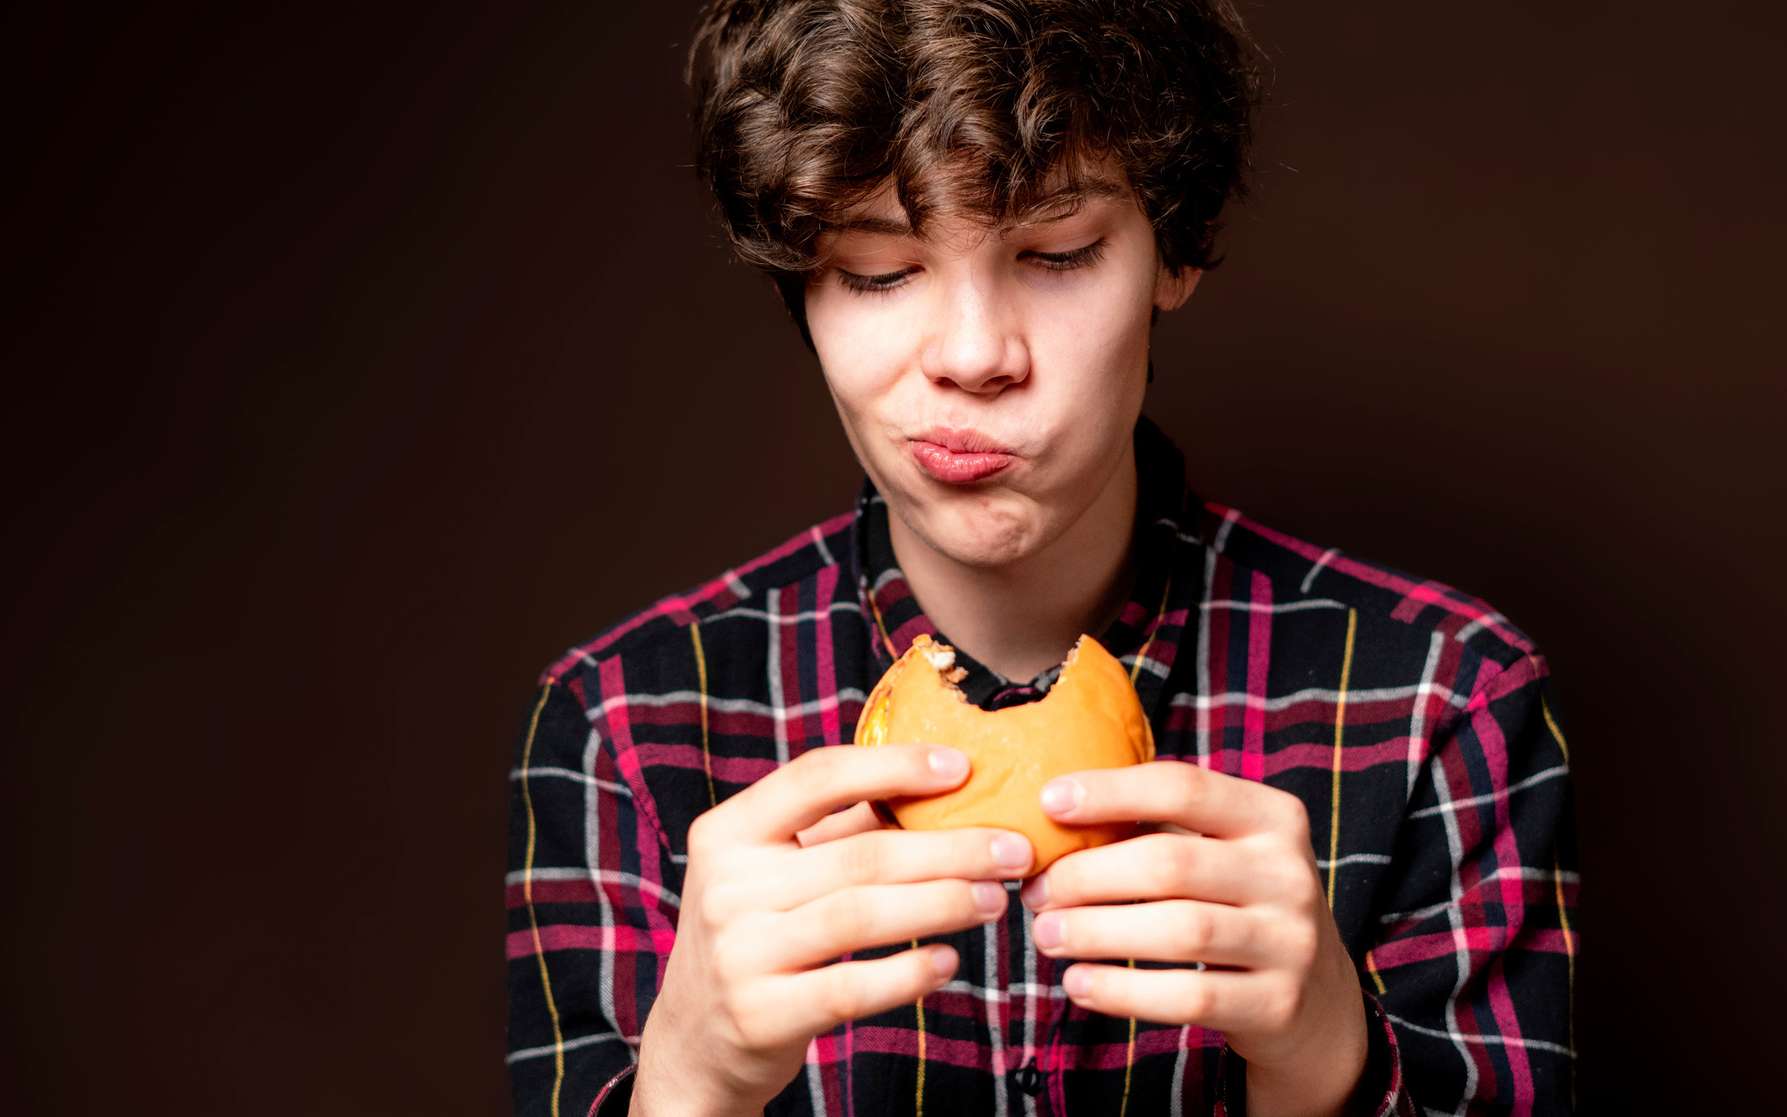 La junk food détraque le cerveau de nos ados, et voici comment